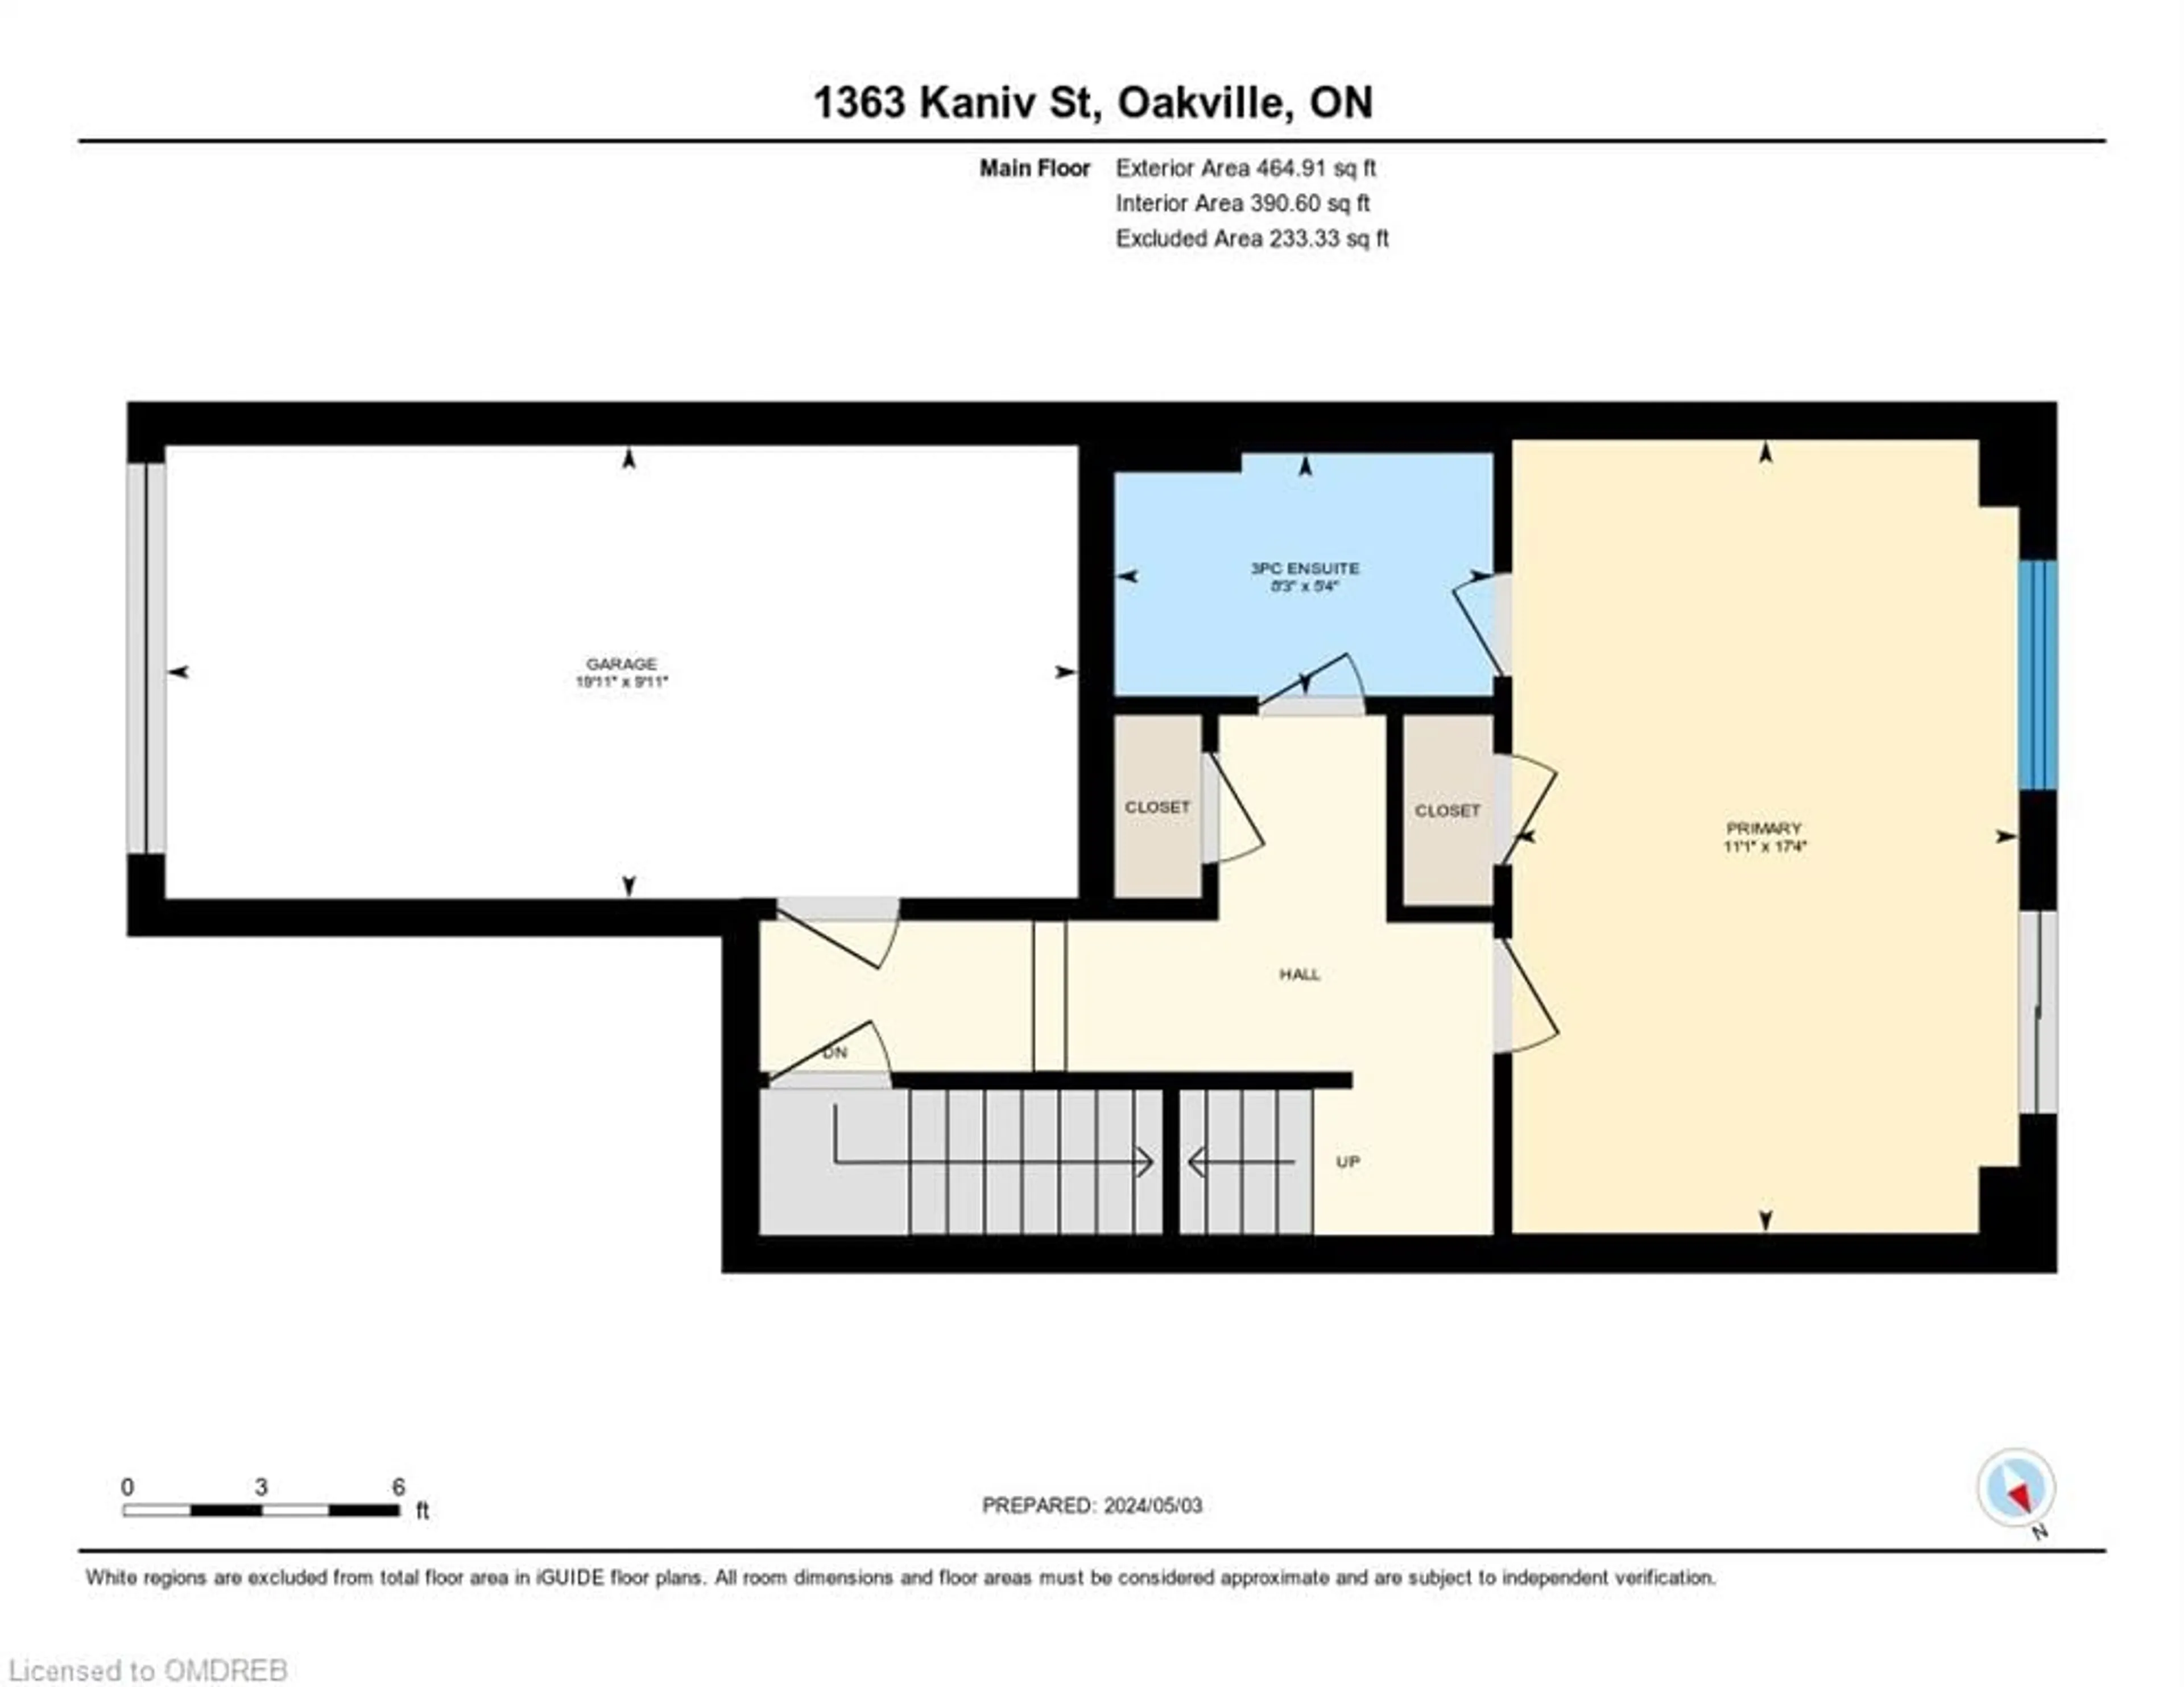 Floor plan for 1363 Kaniv St, Oakville Ontario L6M 5R3